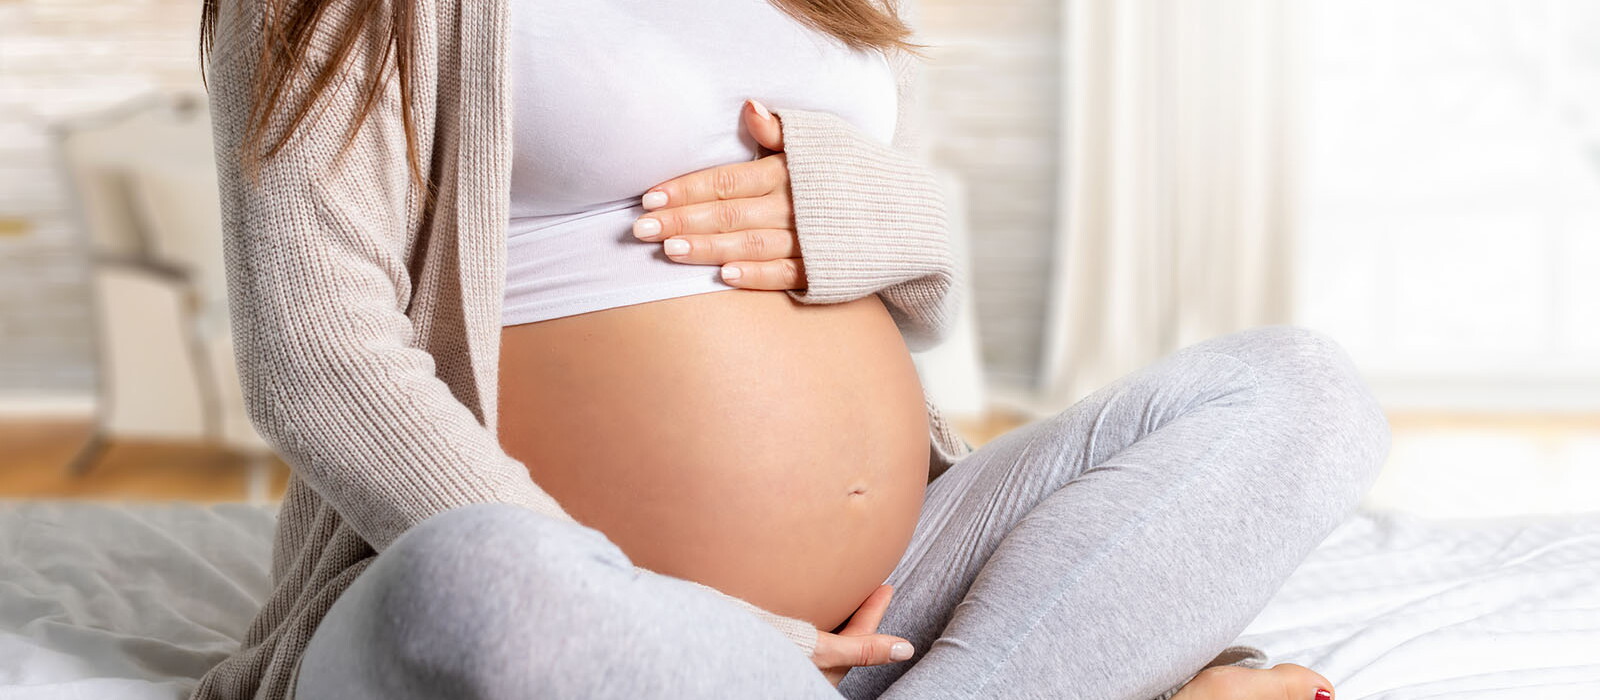 แม่ท้องพร้อม! วิธีดูแลครรภ์ จัดการกับความกังวล เข้าใจอาการคนท้อง